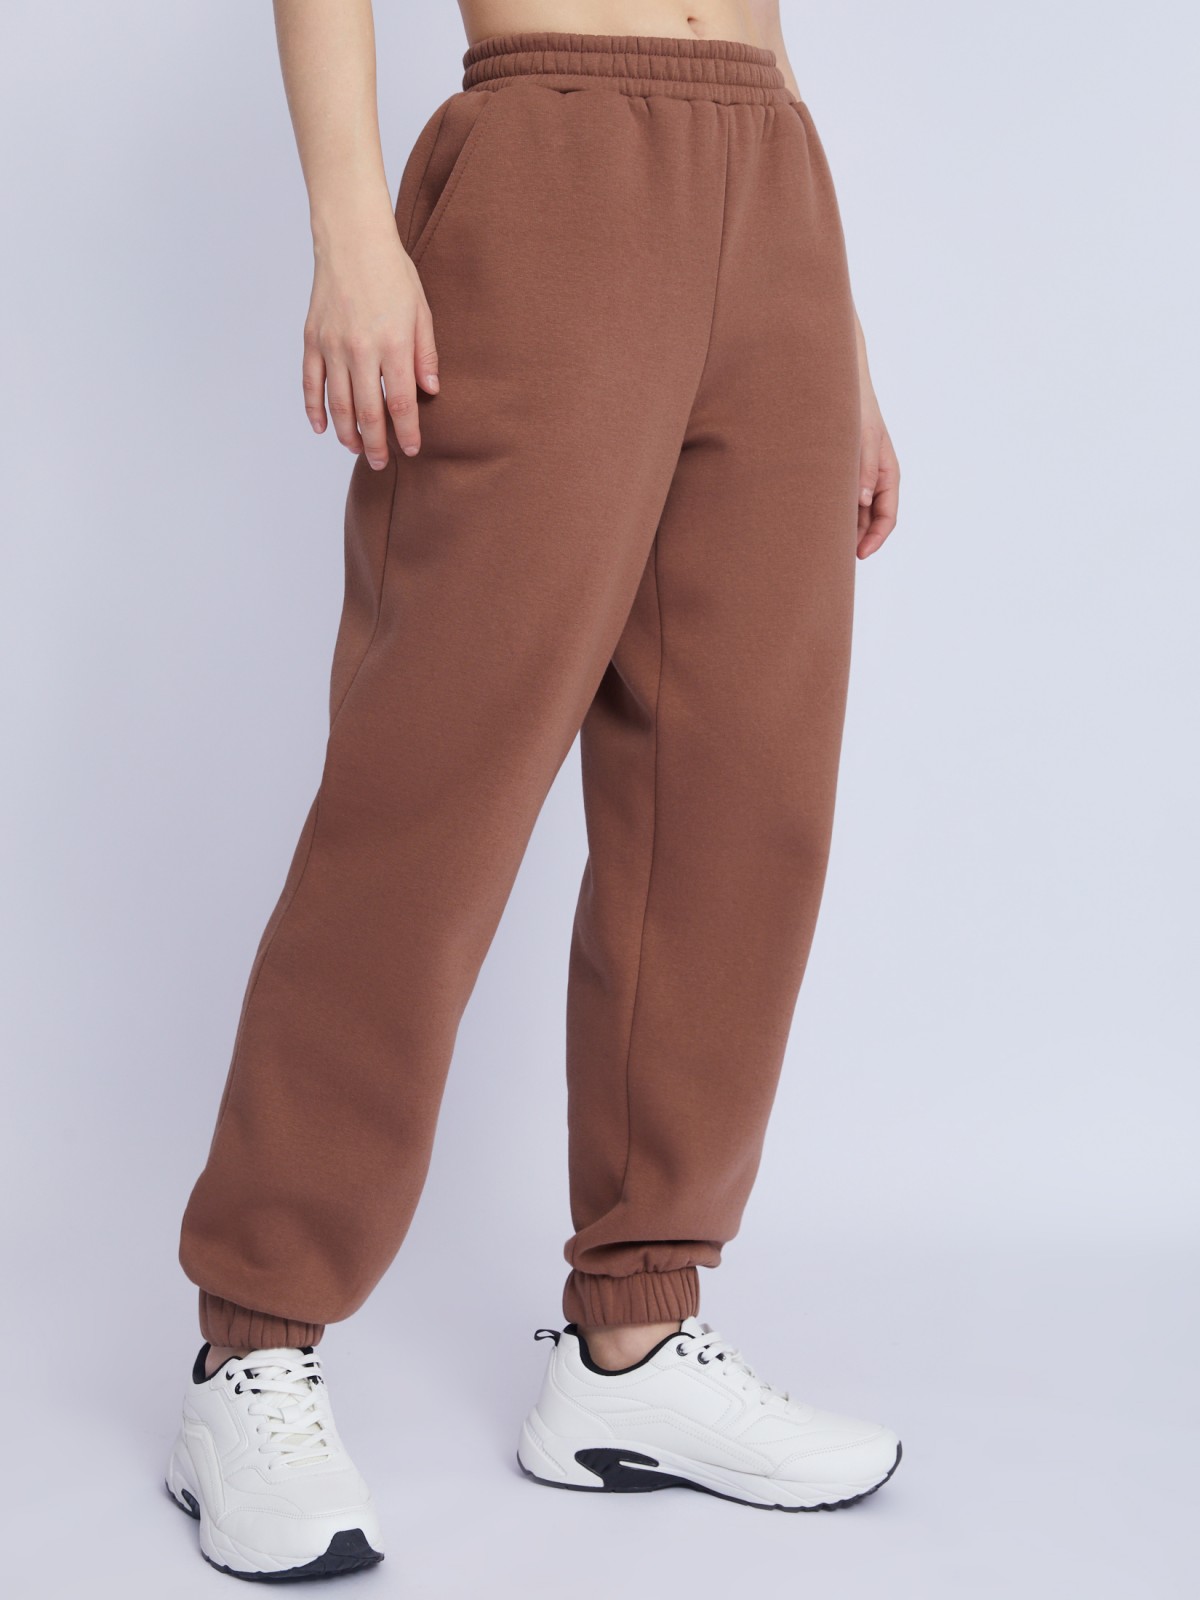 Утеплённые трикотажные брюки-джоггеры с поясом на резинке zolla 223337643022, цвет коричневый, размер XS - фото 5